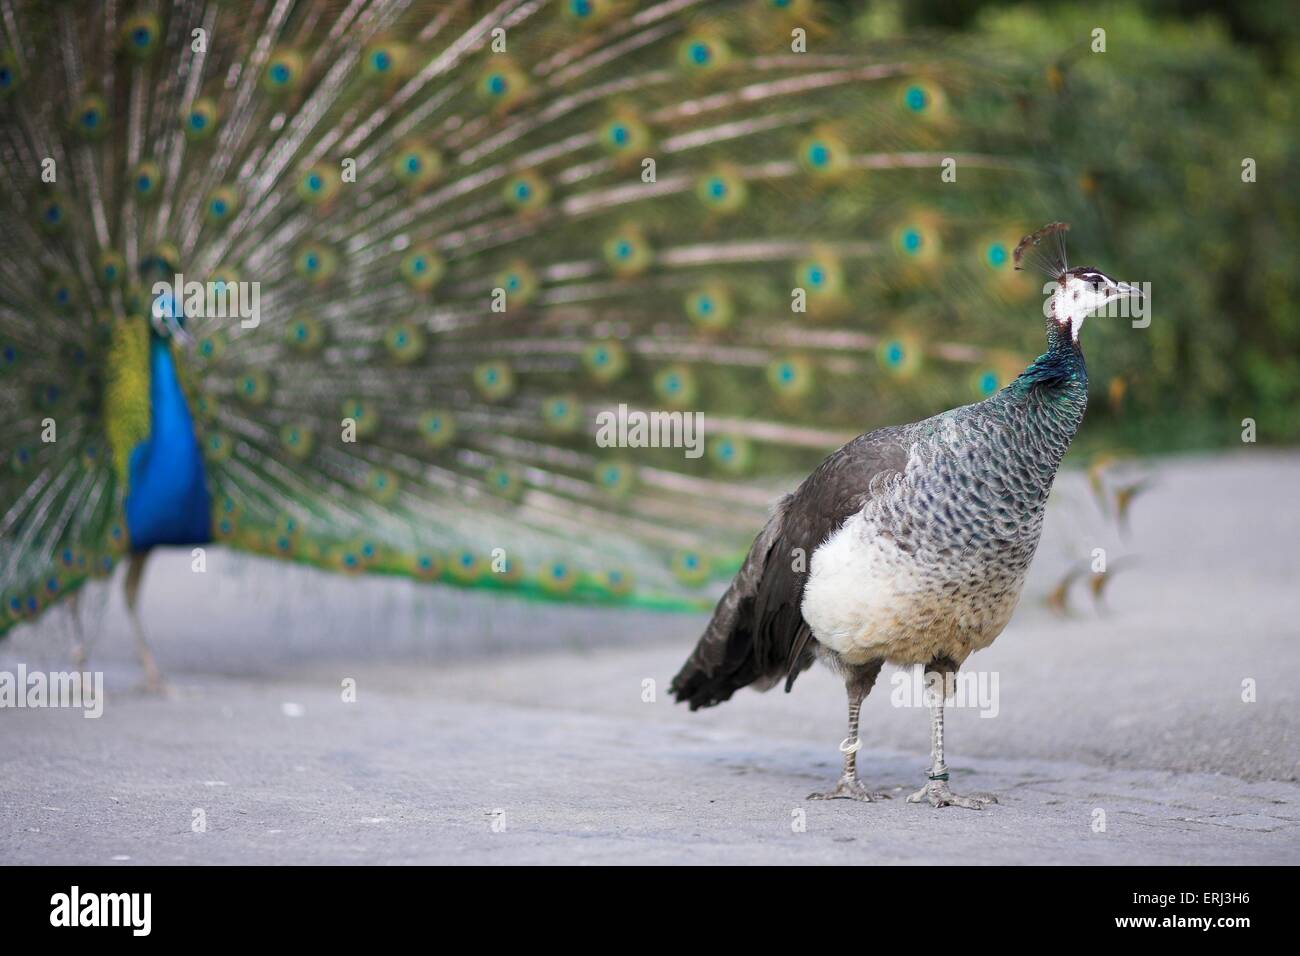 blue peafowl Stock Photo